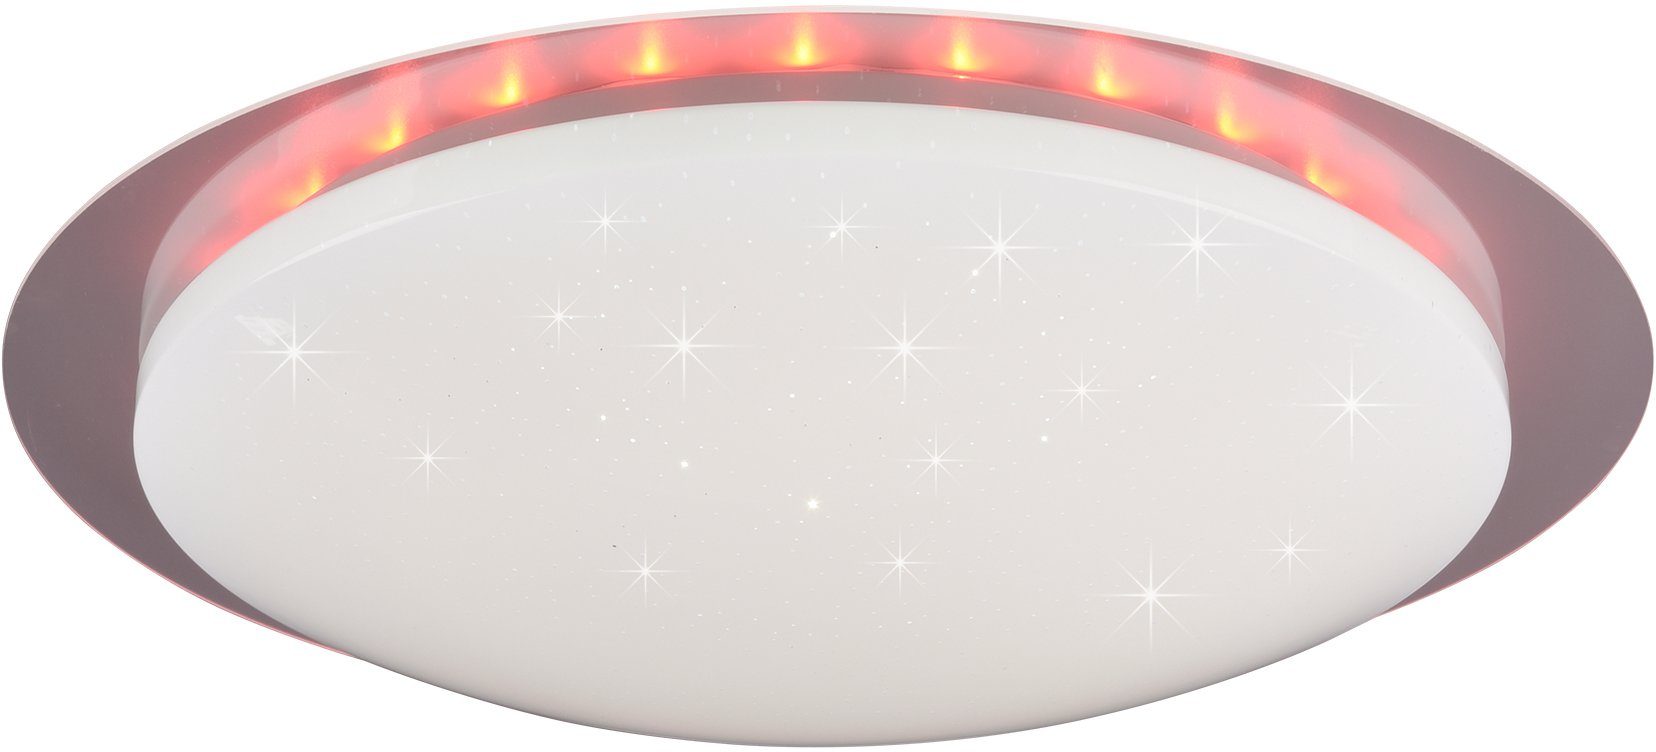 TRIO Leuchten schaltbar, integriert, getrennt Dimmer, Fernbed., fest 48 Joleen, mit Dimmer Ø mehrere Helligkeitsstufen, cm Starlight-Effekt, LED LED Backlight, RGB Farbwechsler, Deckenleuchte inkl